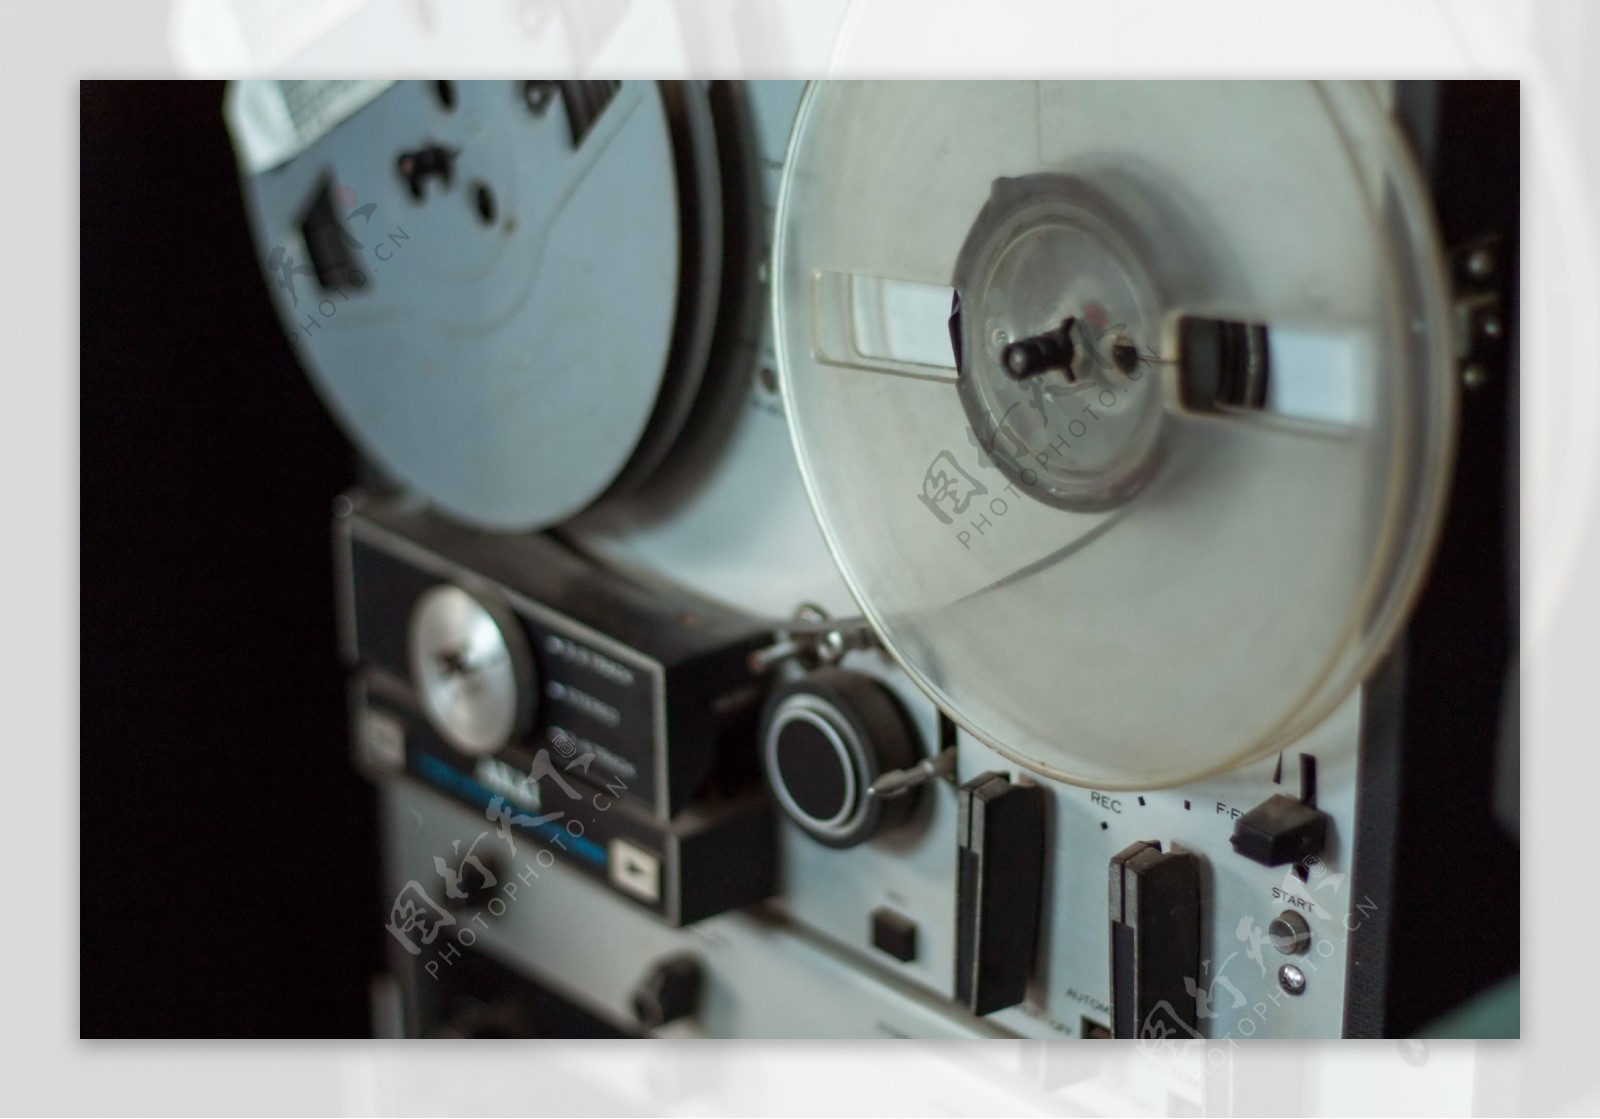 老式磁带录音机图片